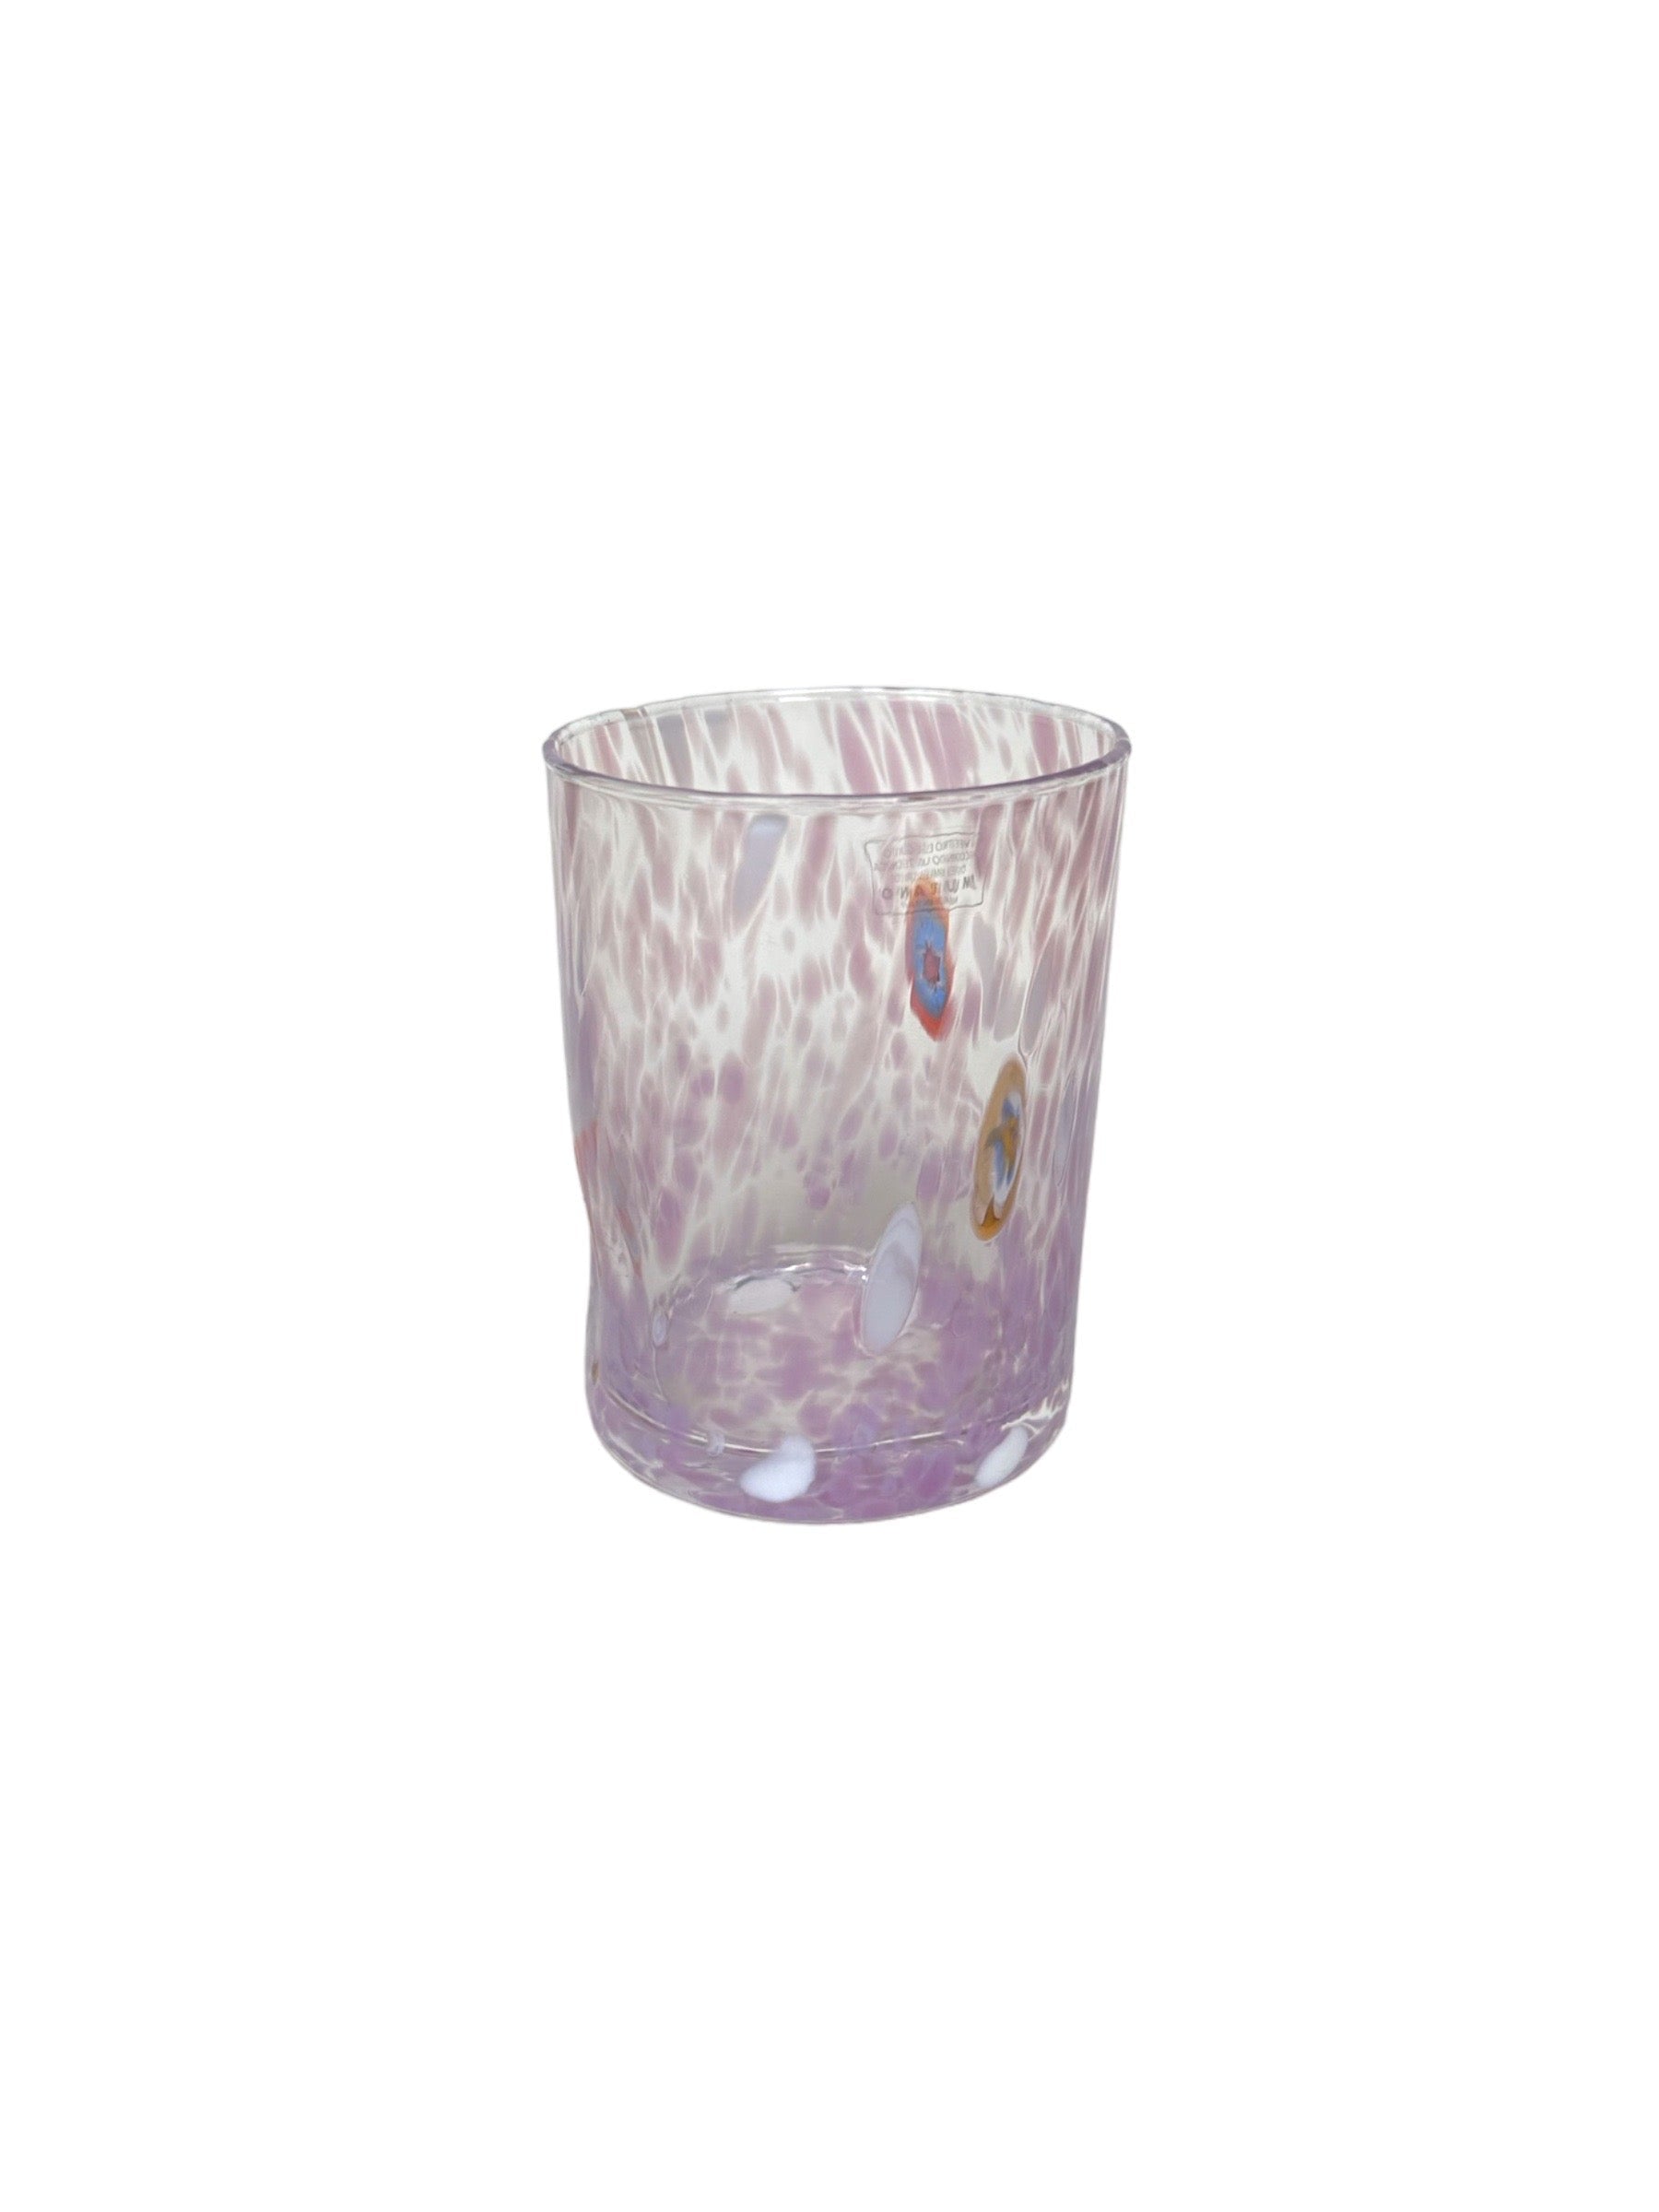 Handblown Murano Glass w/ Murrine